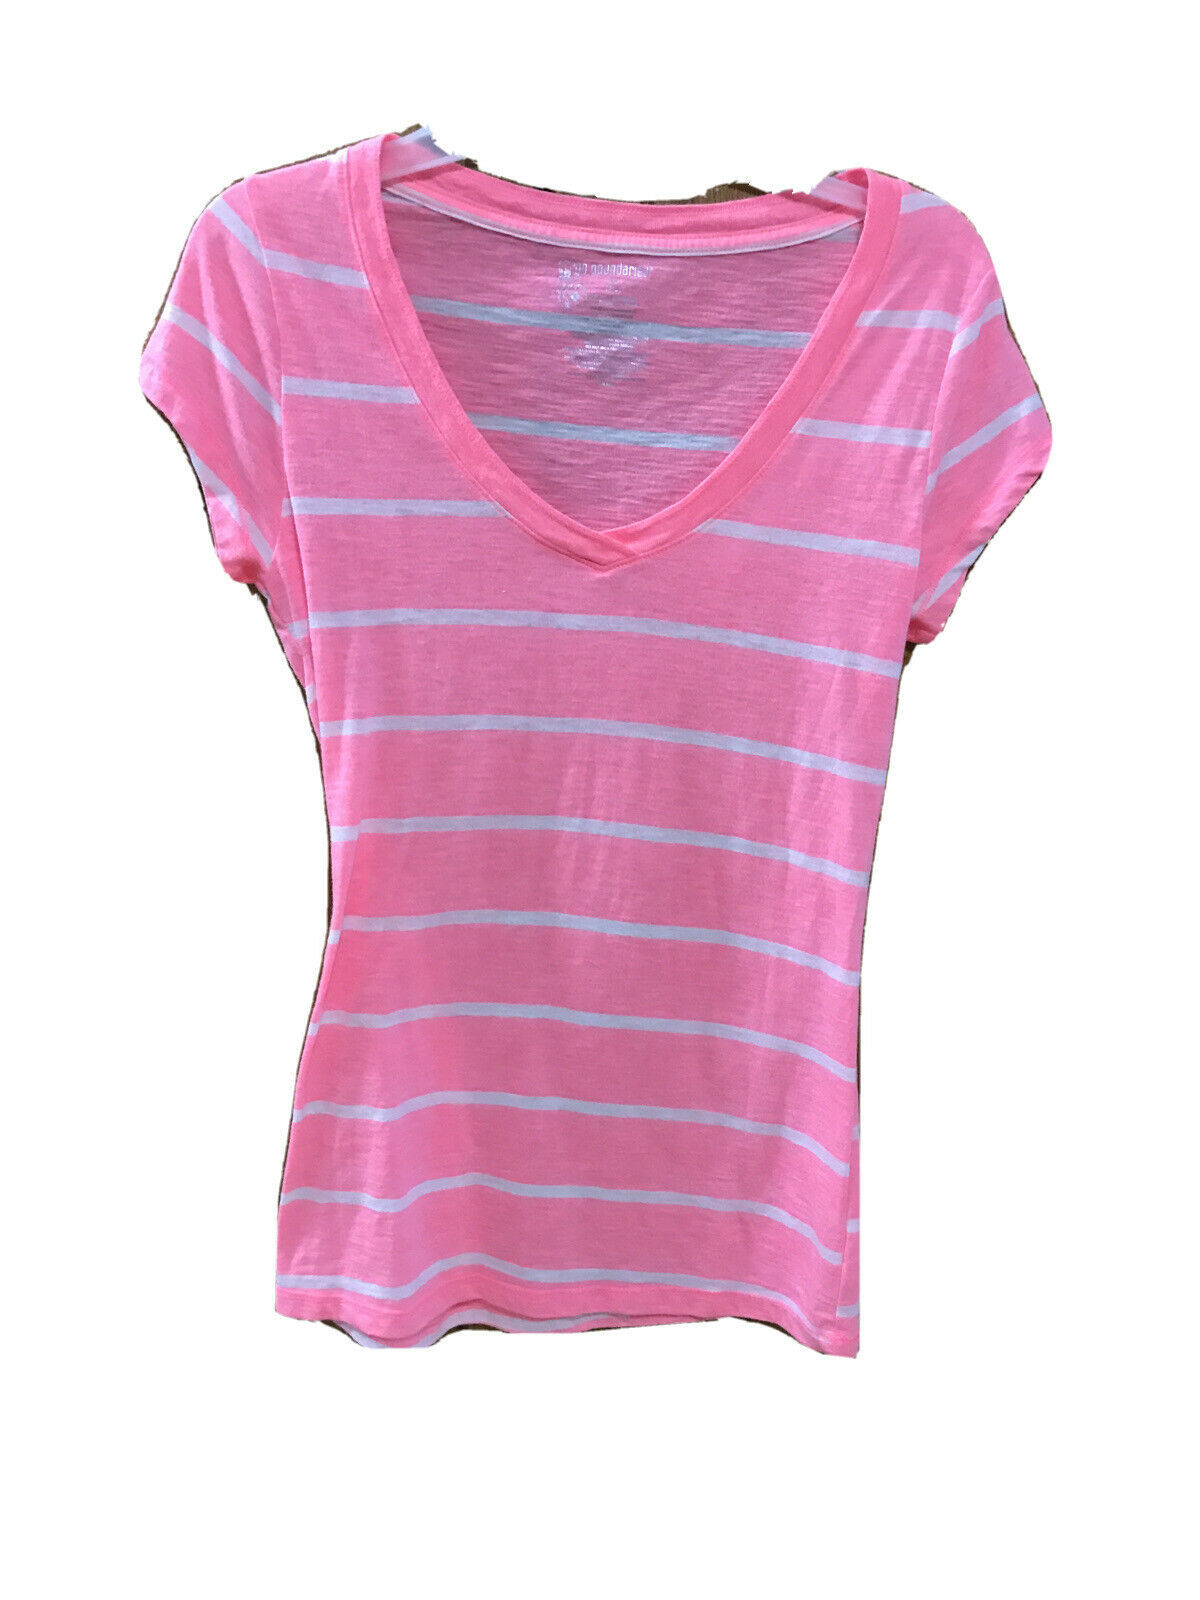 No Boundaries Women's Pink and White Stripe Tee Shirt US Medium - Tops